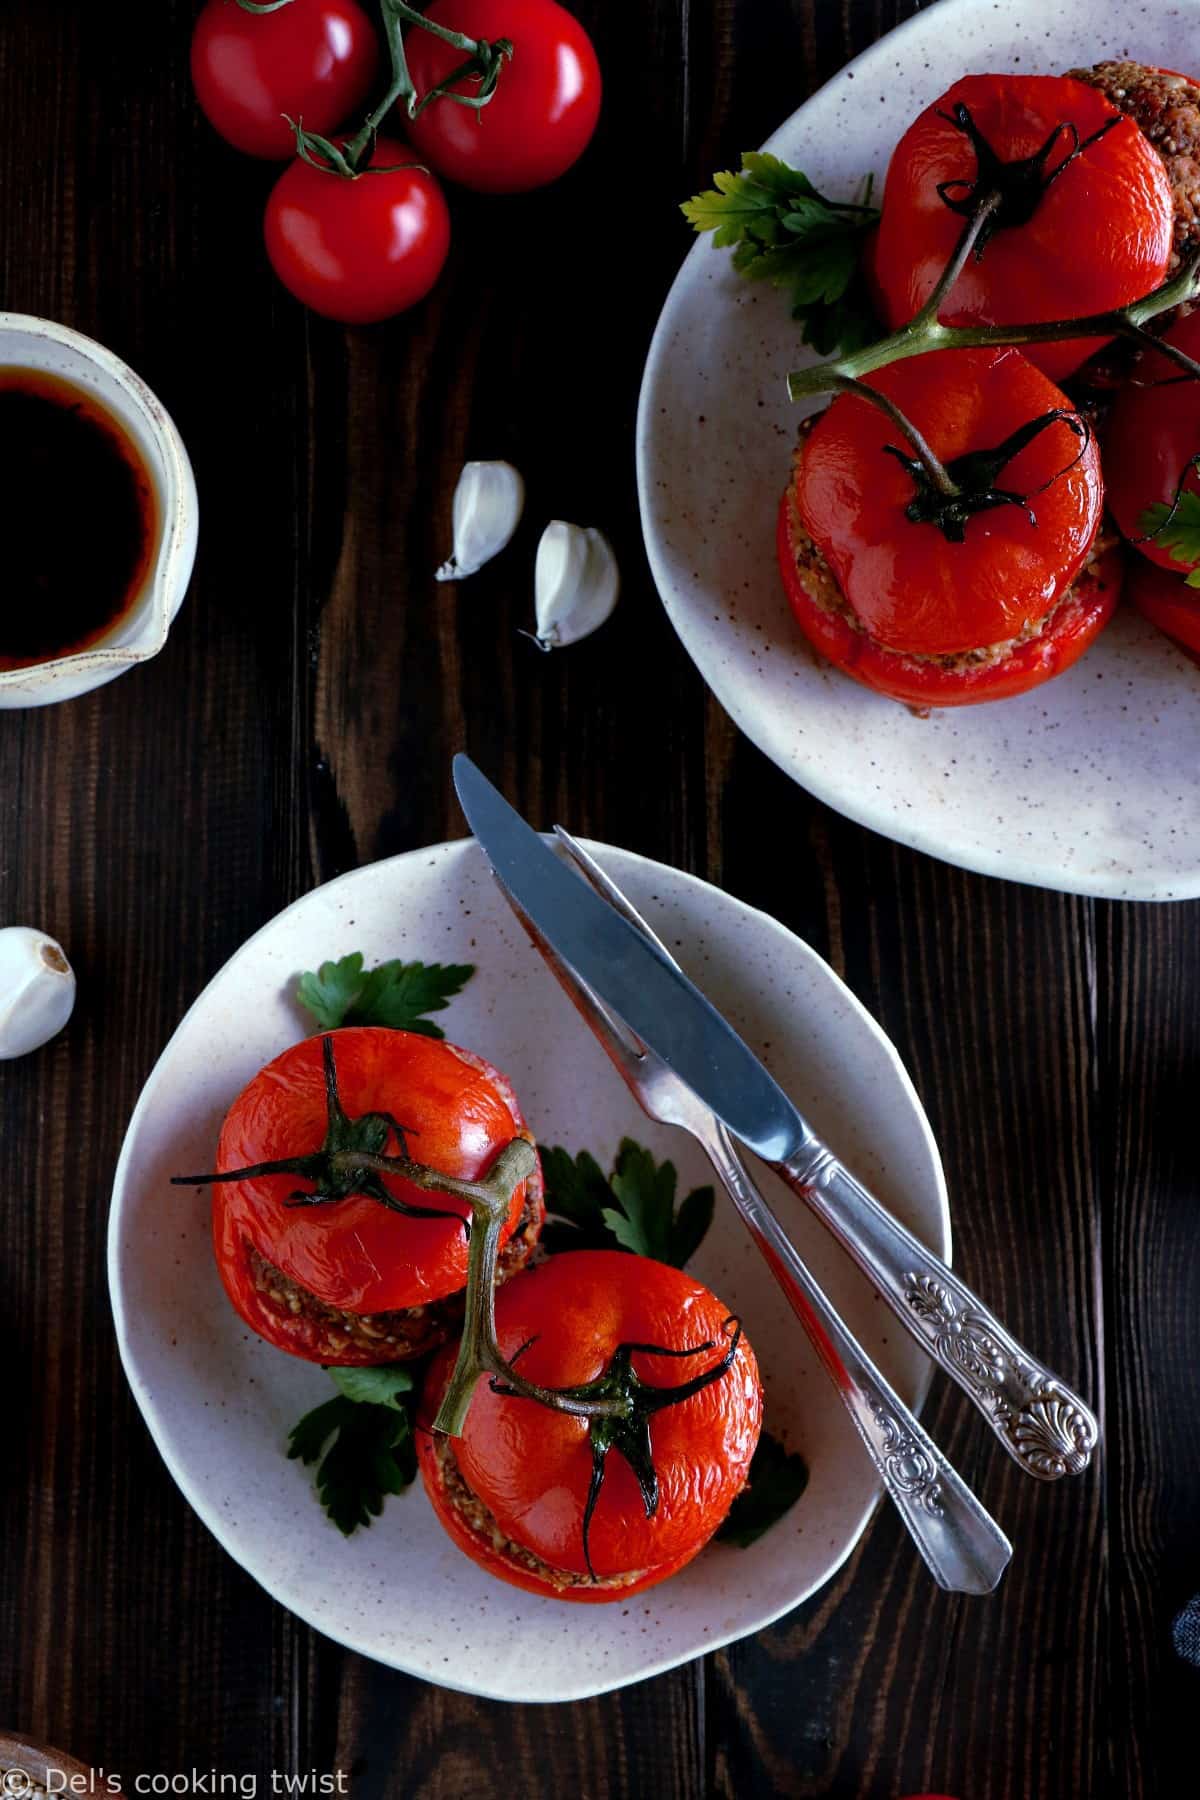 Délicieuses tomates farcies en version vegan, avec des pois chiches, du quinoa et des tomates séchées. Le résultat ? Des tomates juteuses, une farce aux saveurs méditerranéennes et un plat à la fois sain, nourrissant et complet.